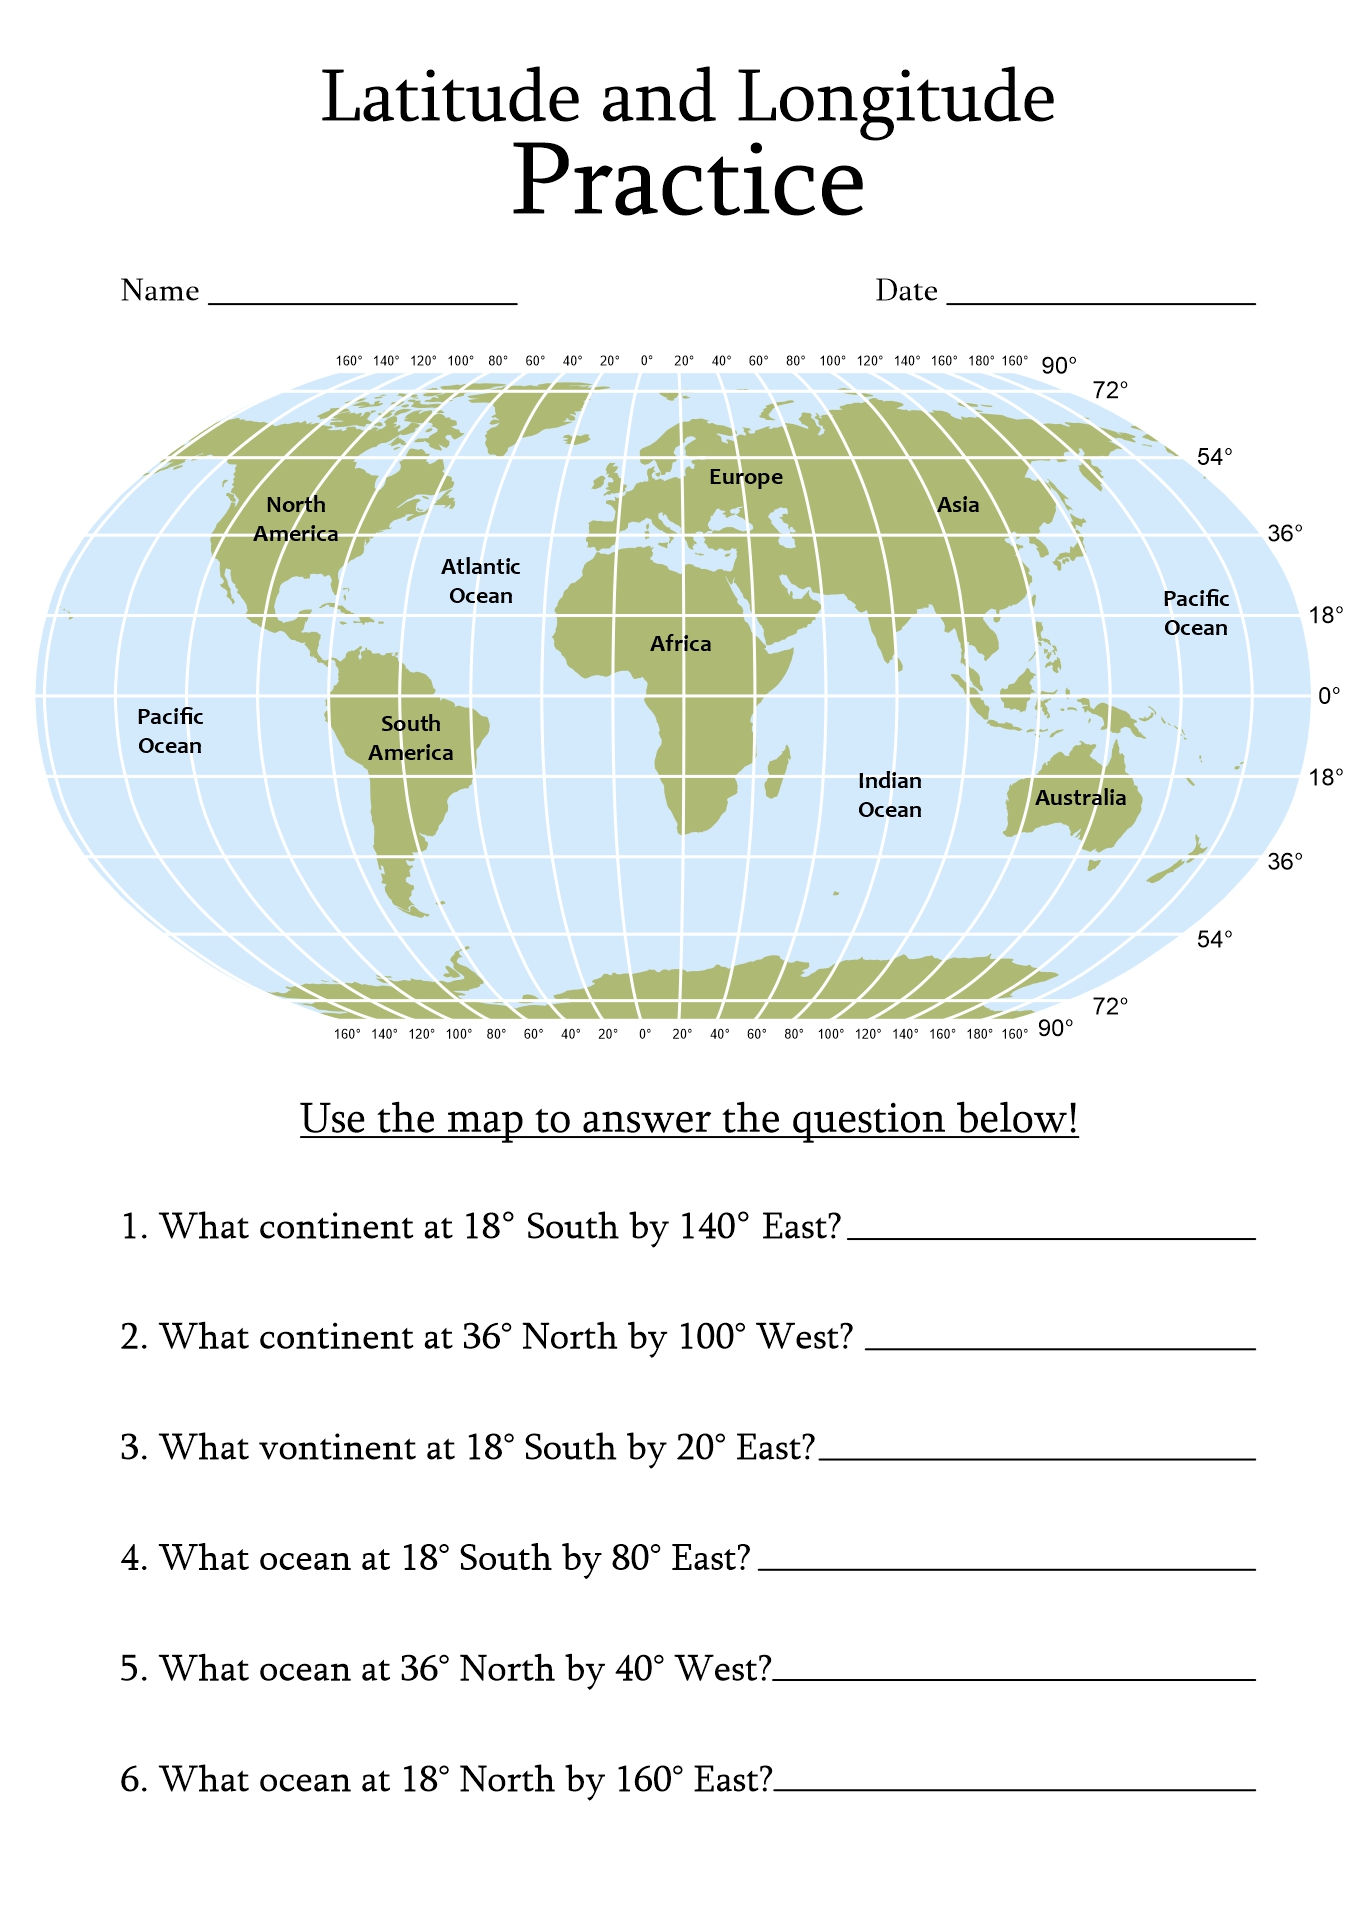 World Map Latitude and Longitude Worksheet Image